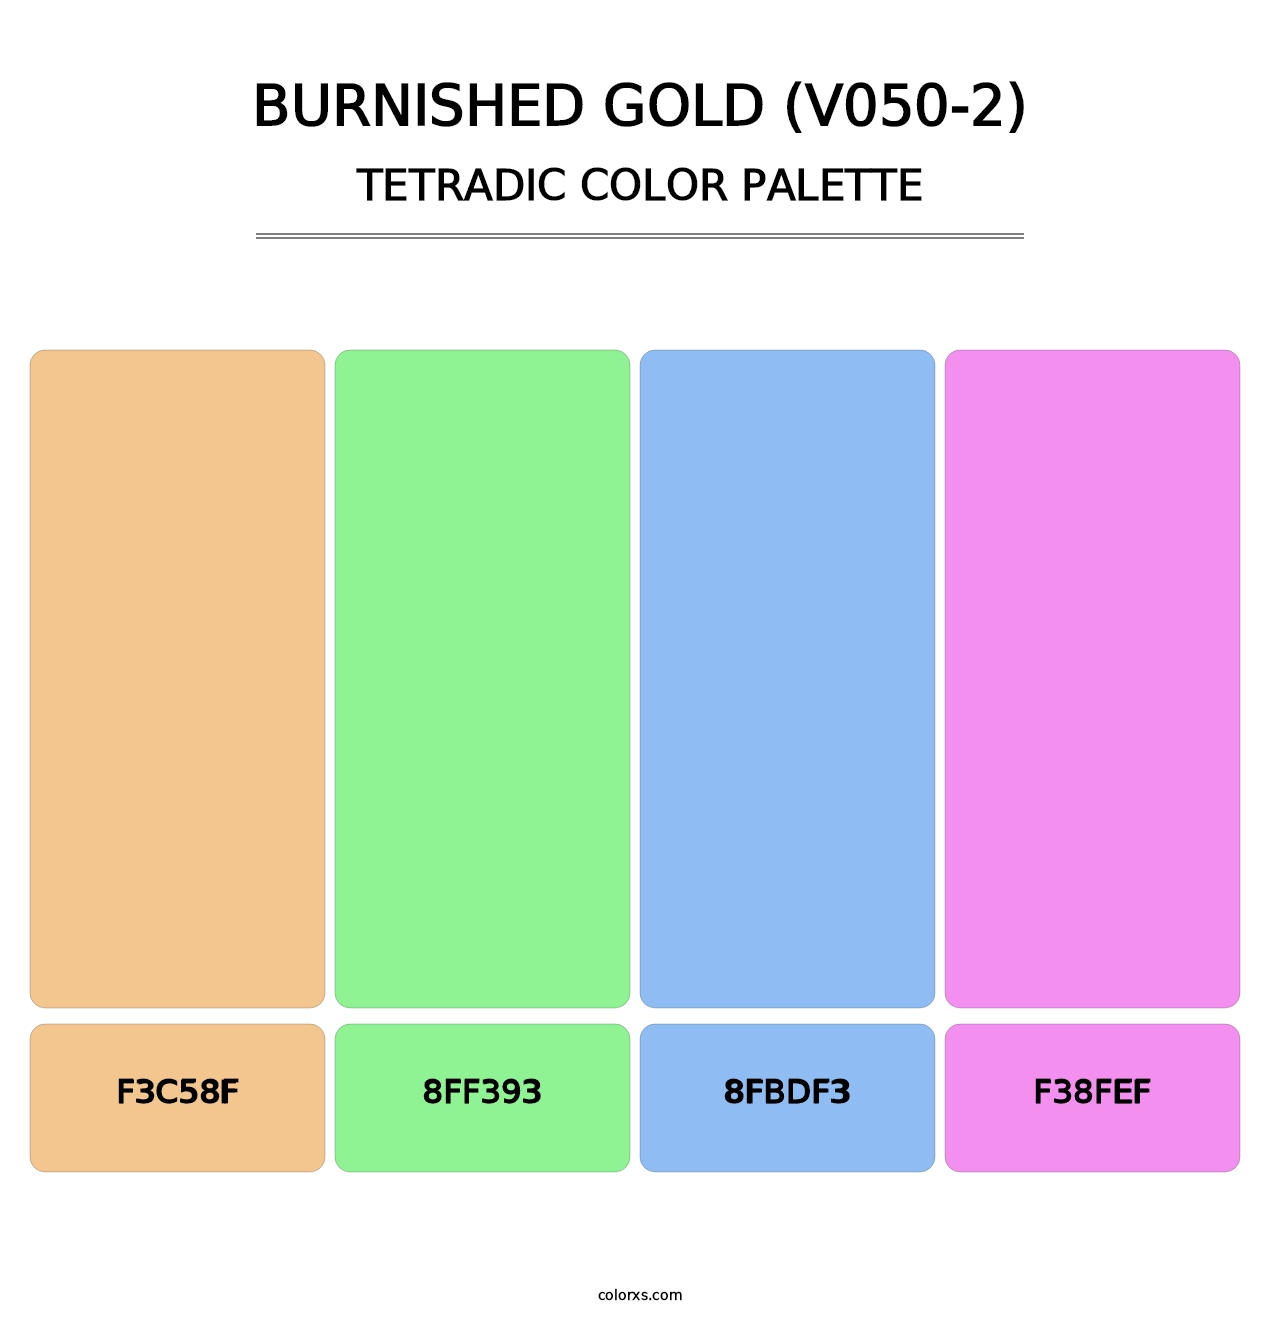 Burnished Gold (V050-2) - Tetradic Color Palette